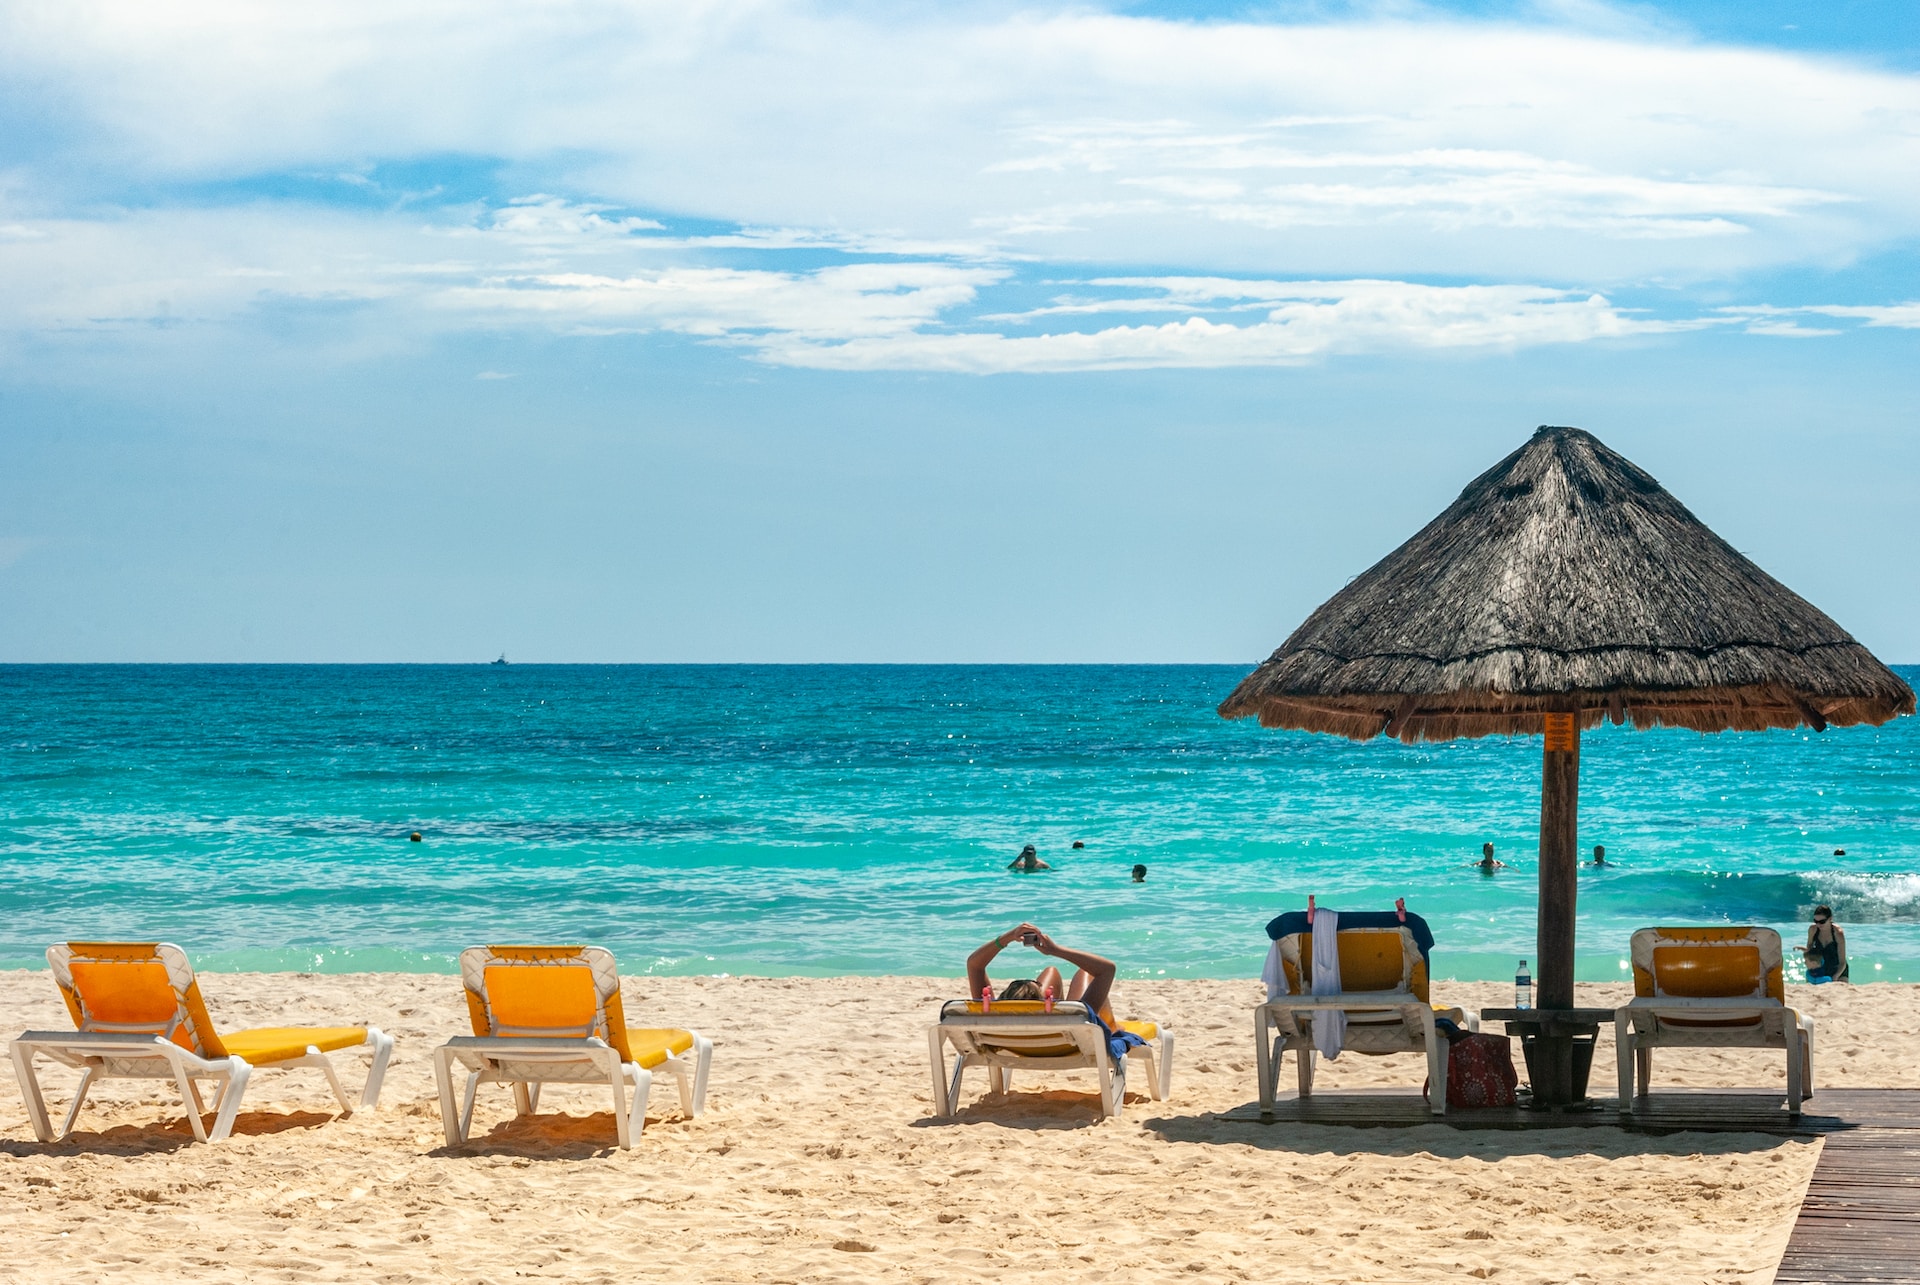 A beach in Cancun.